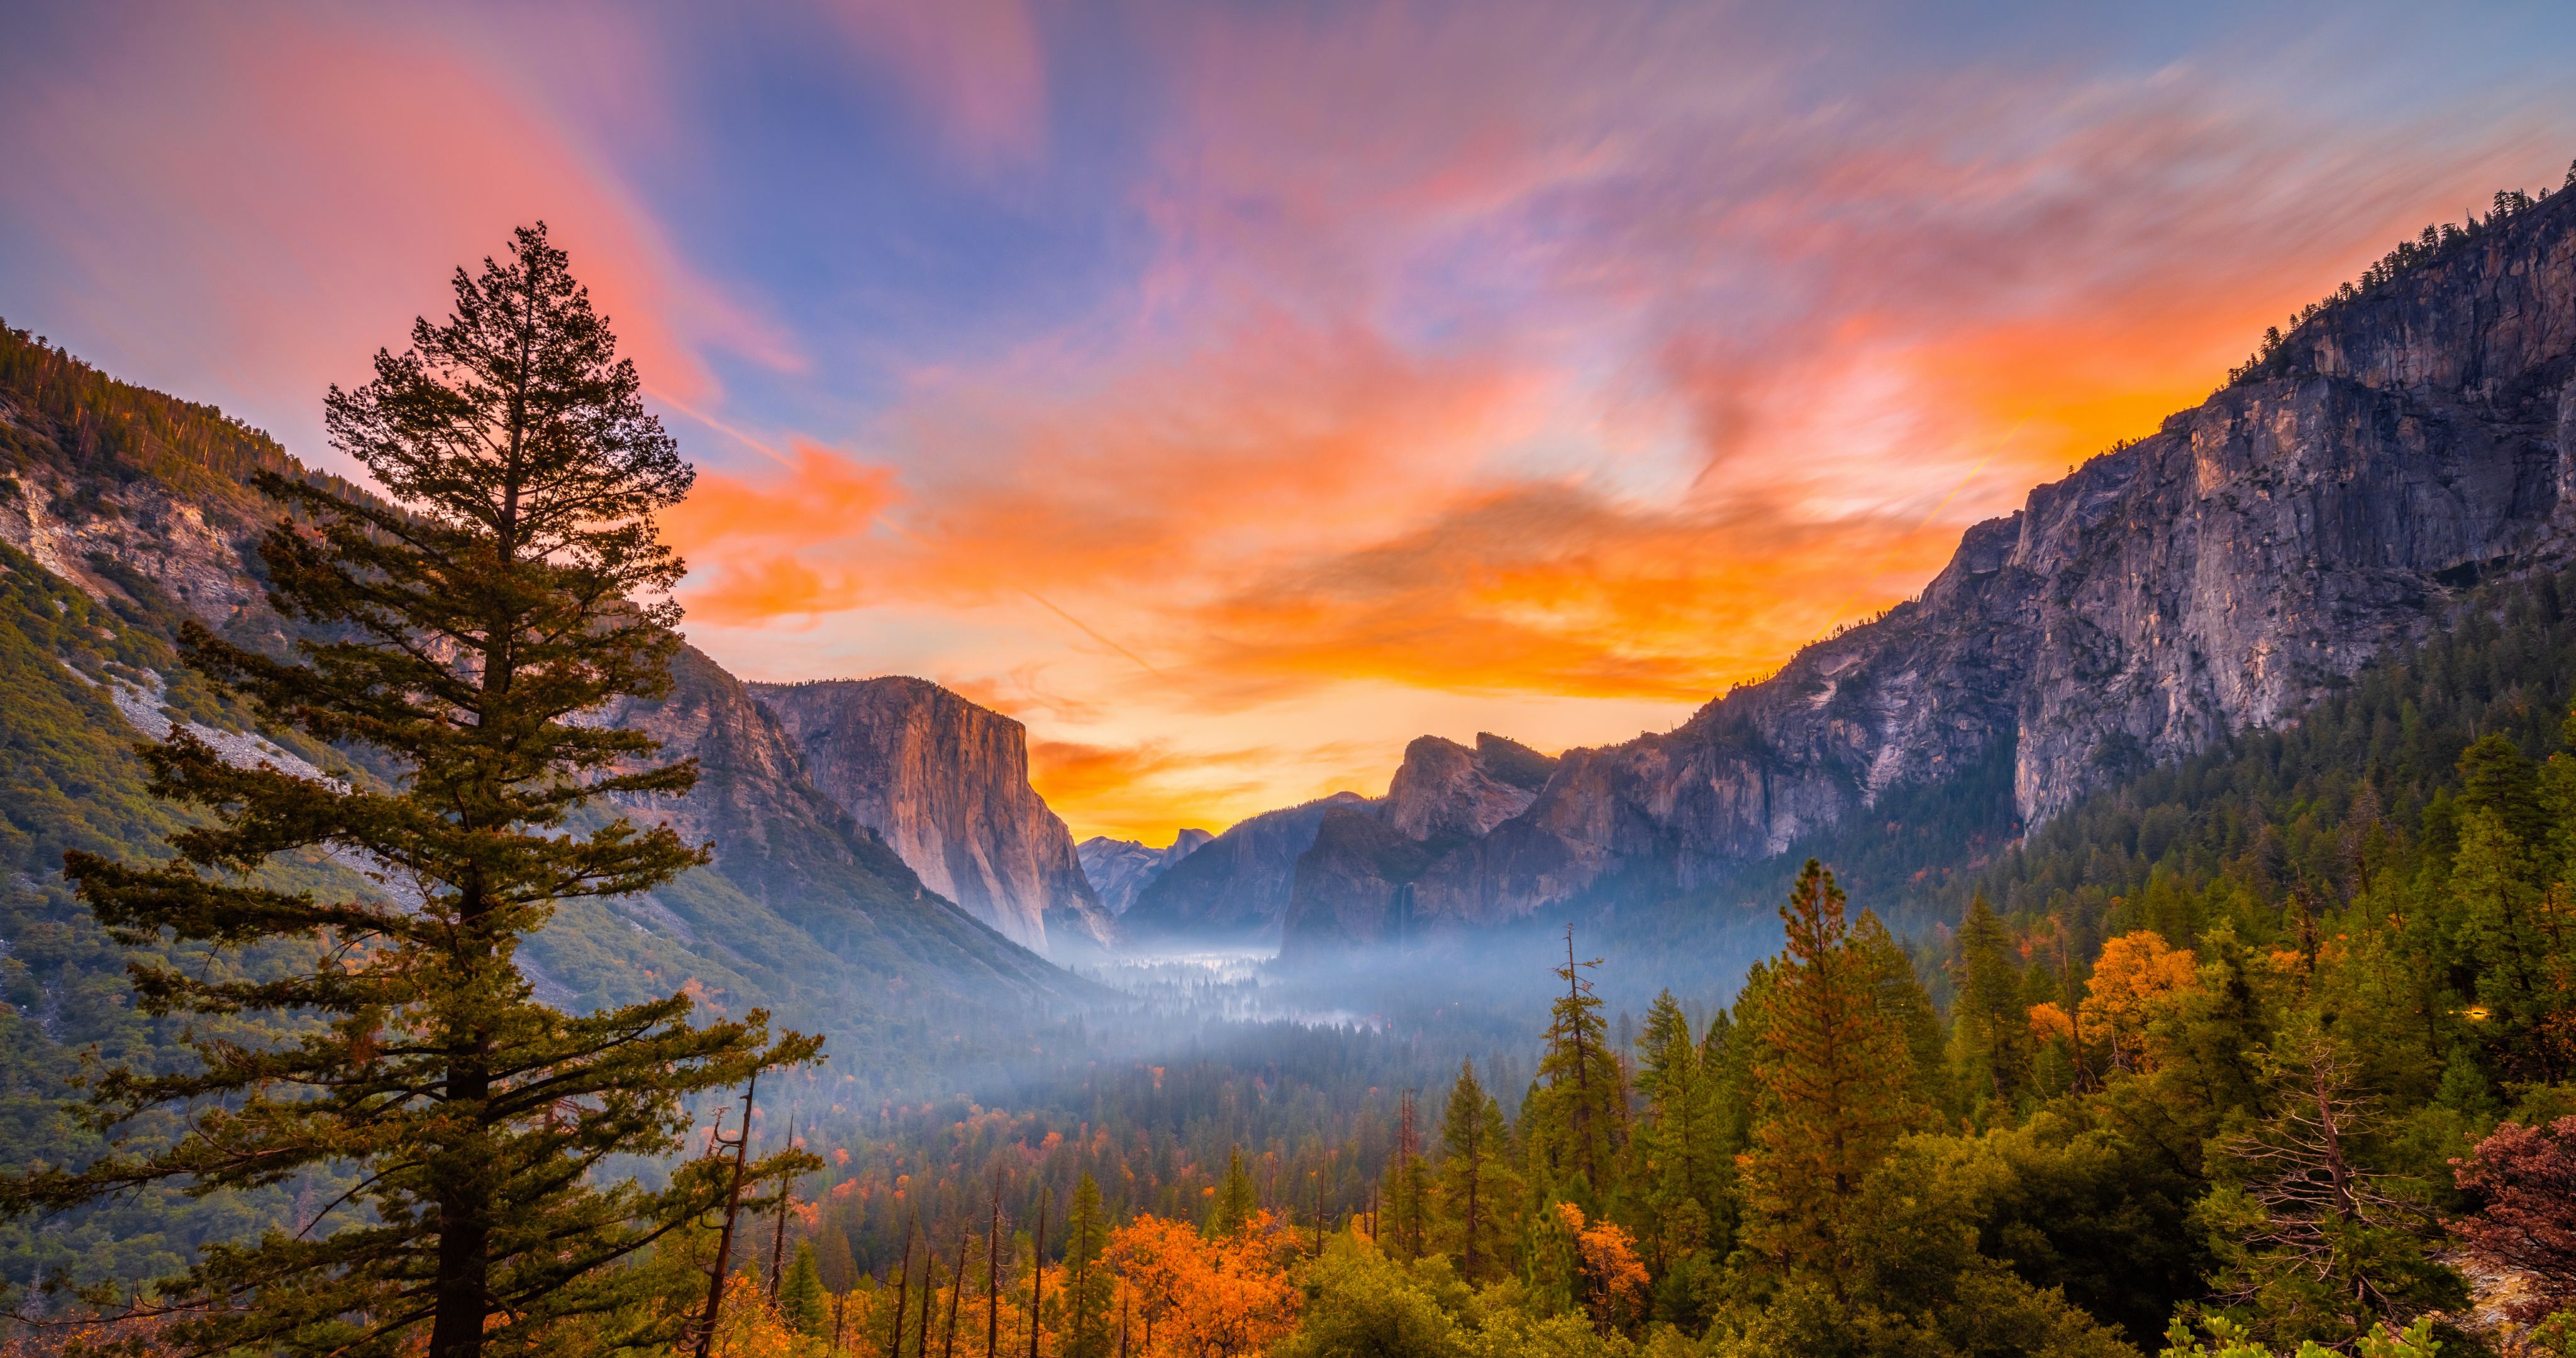 Обои на рабочий стол Йосемити, Калифорния, США, осень, горы, лес, туман, облака, закат, пейзаж